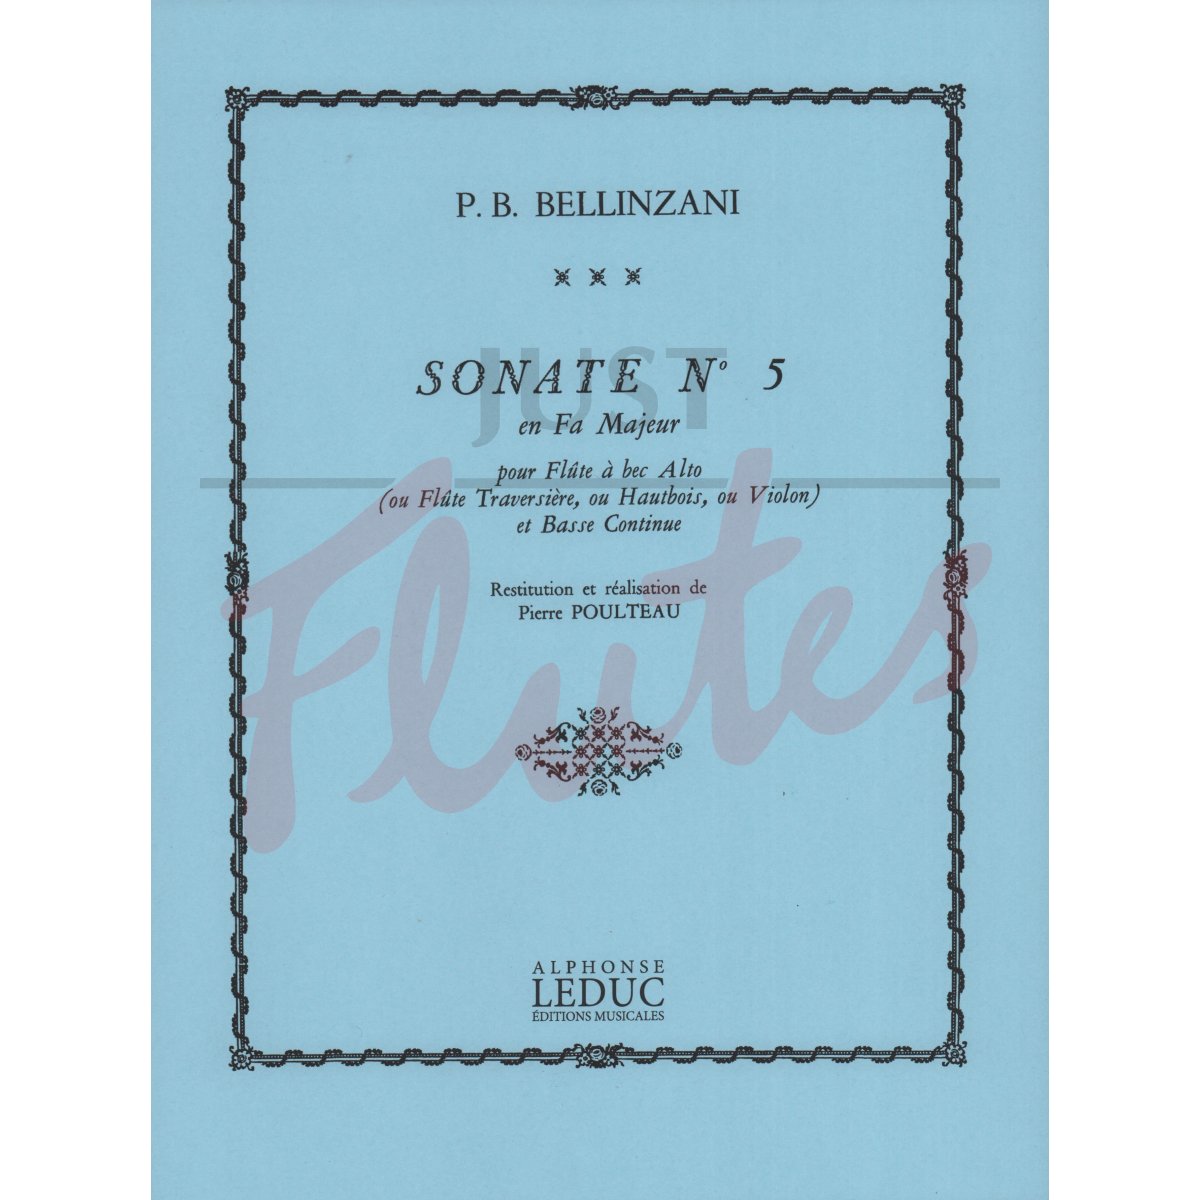 Sonata No.5 in F major for Flute and Basso Continuo